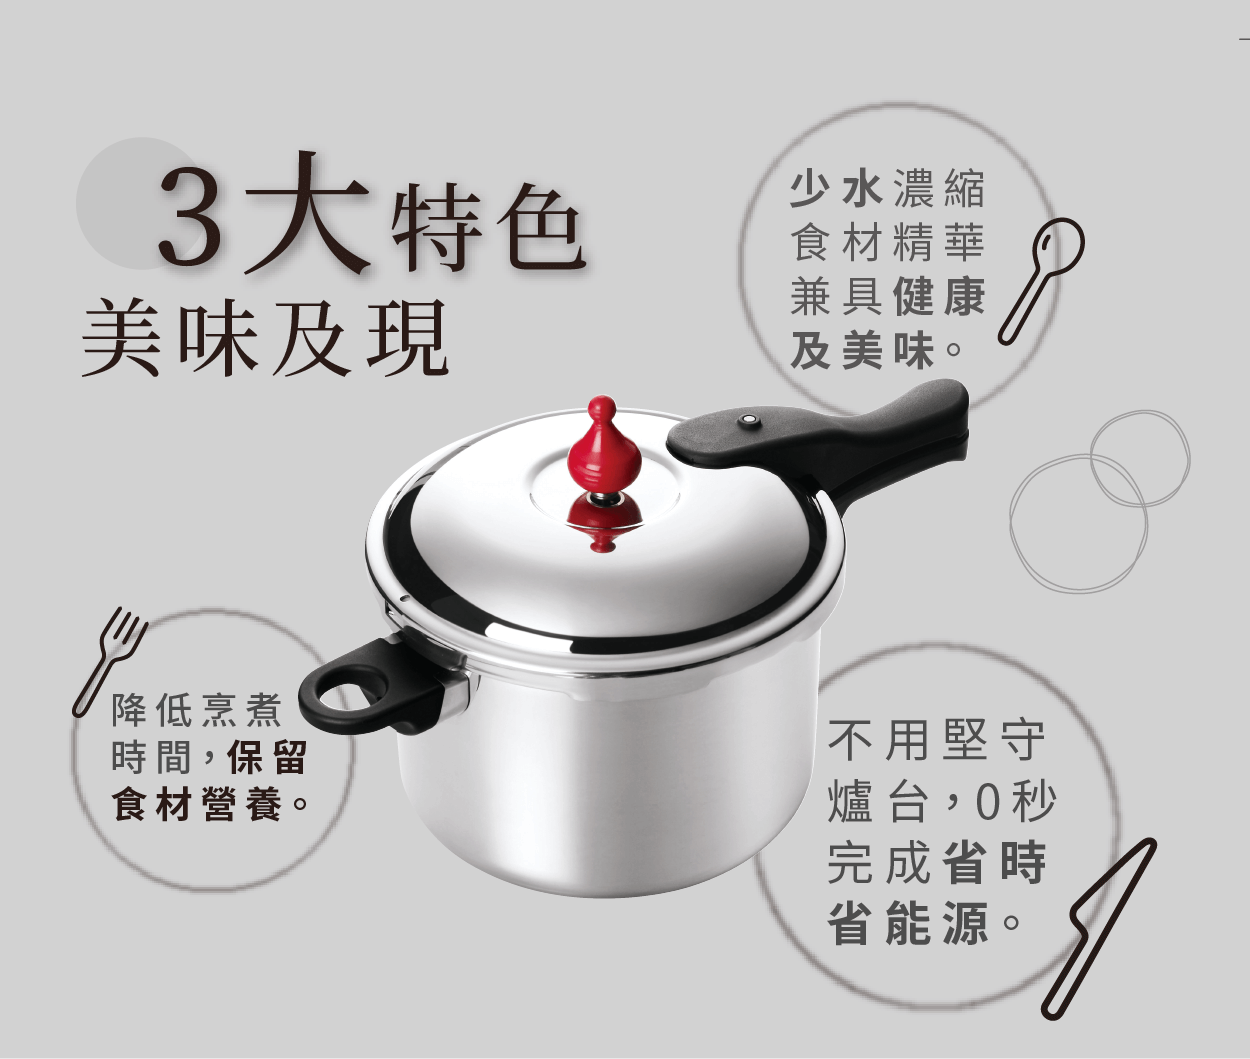 日本製壓力鍋,壓力鍋,快鍋,悶燒鍋,零秒活力鍋,好評鍋具,日本送禮第一首選